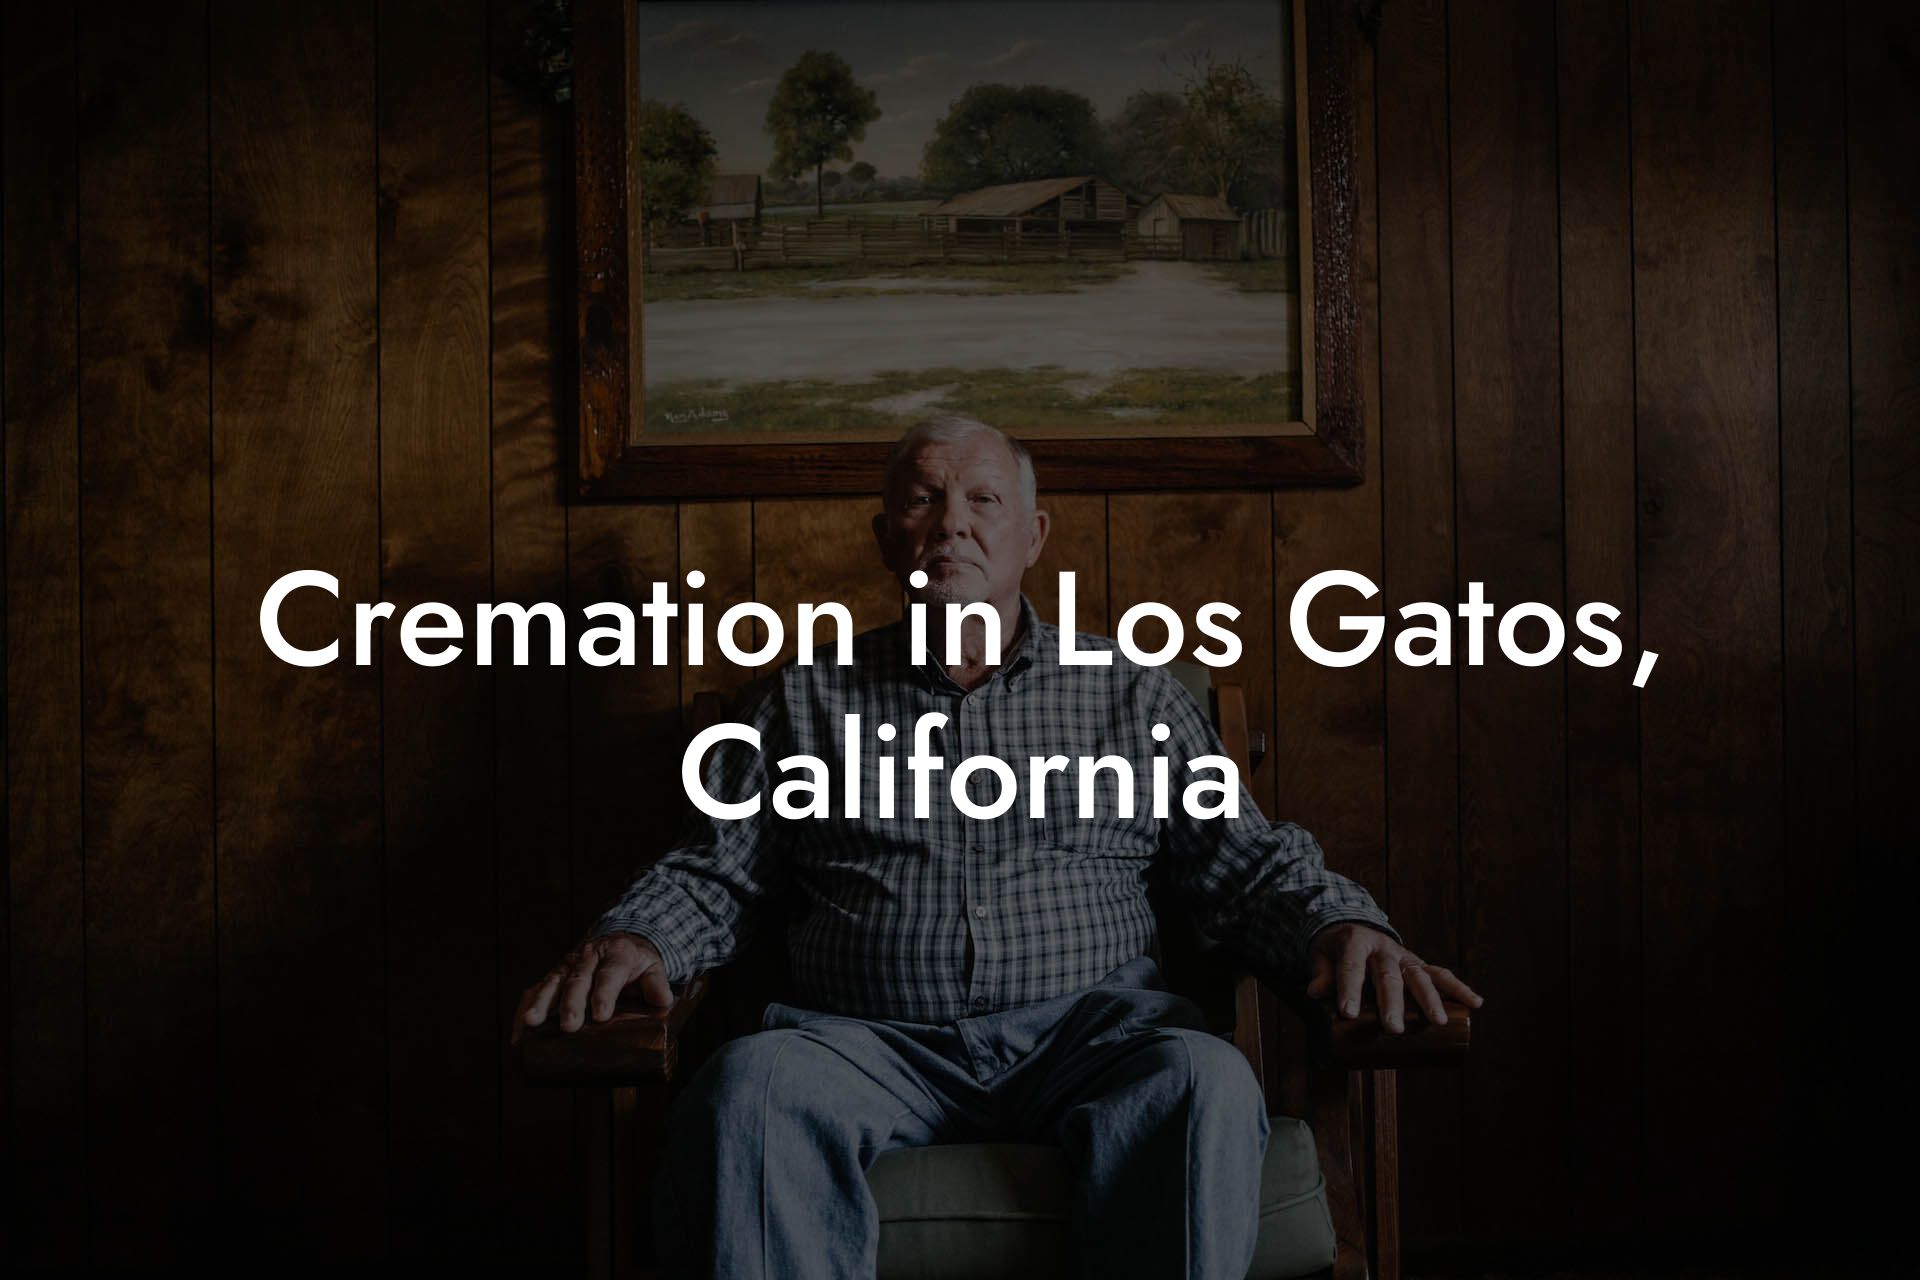 Cremation in Los Gatos, California